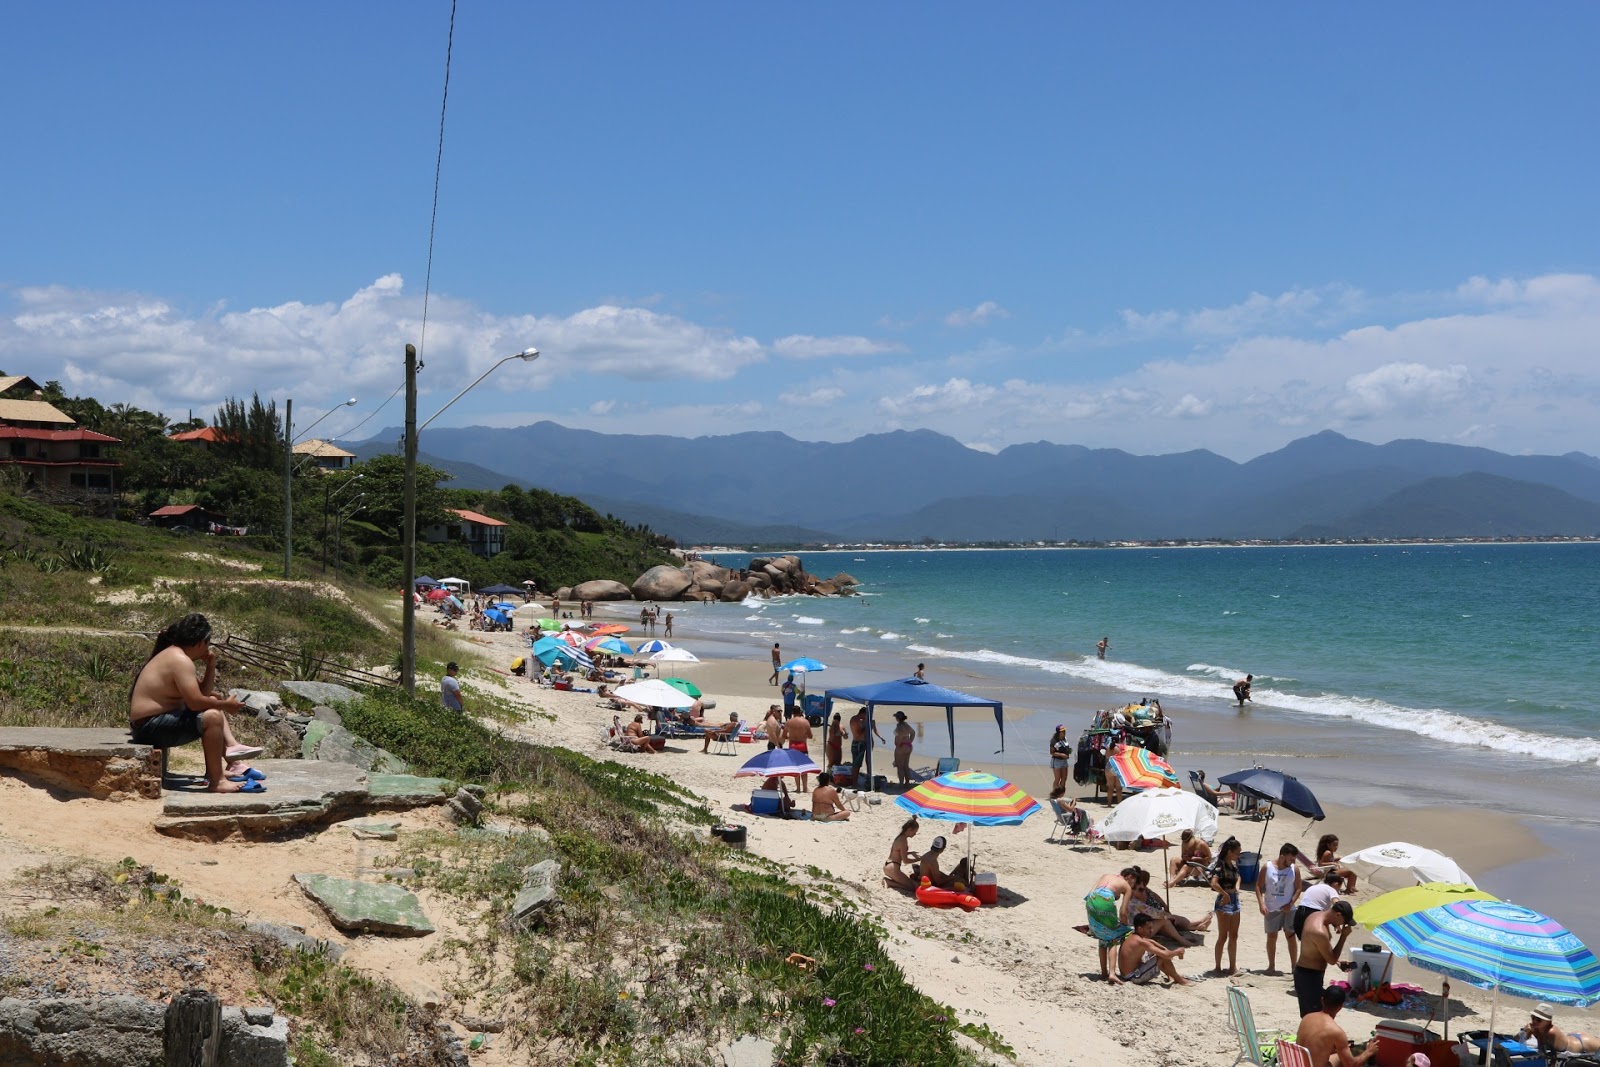 Praia de Cima'in fotoğrafı ve yerleşim